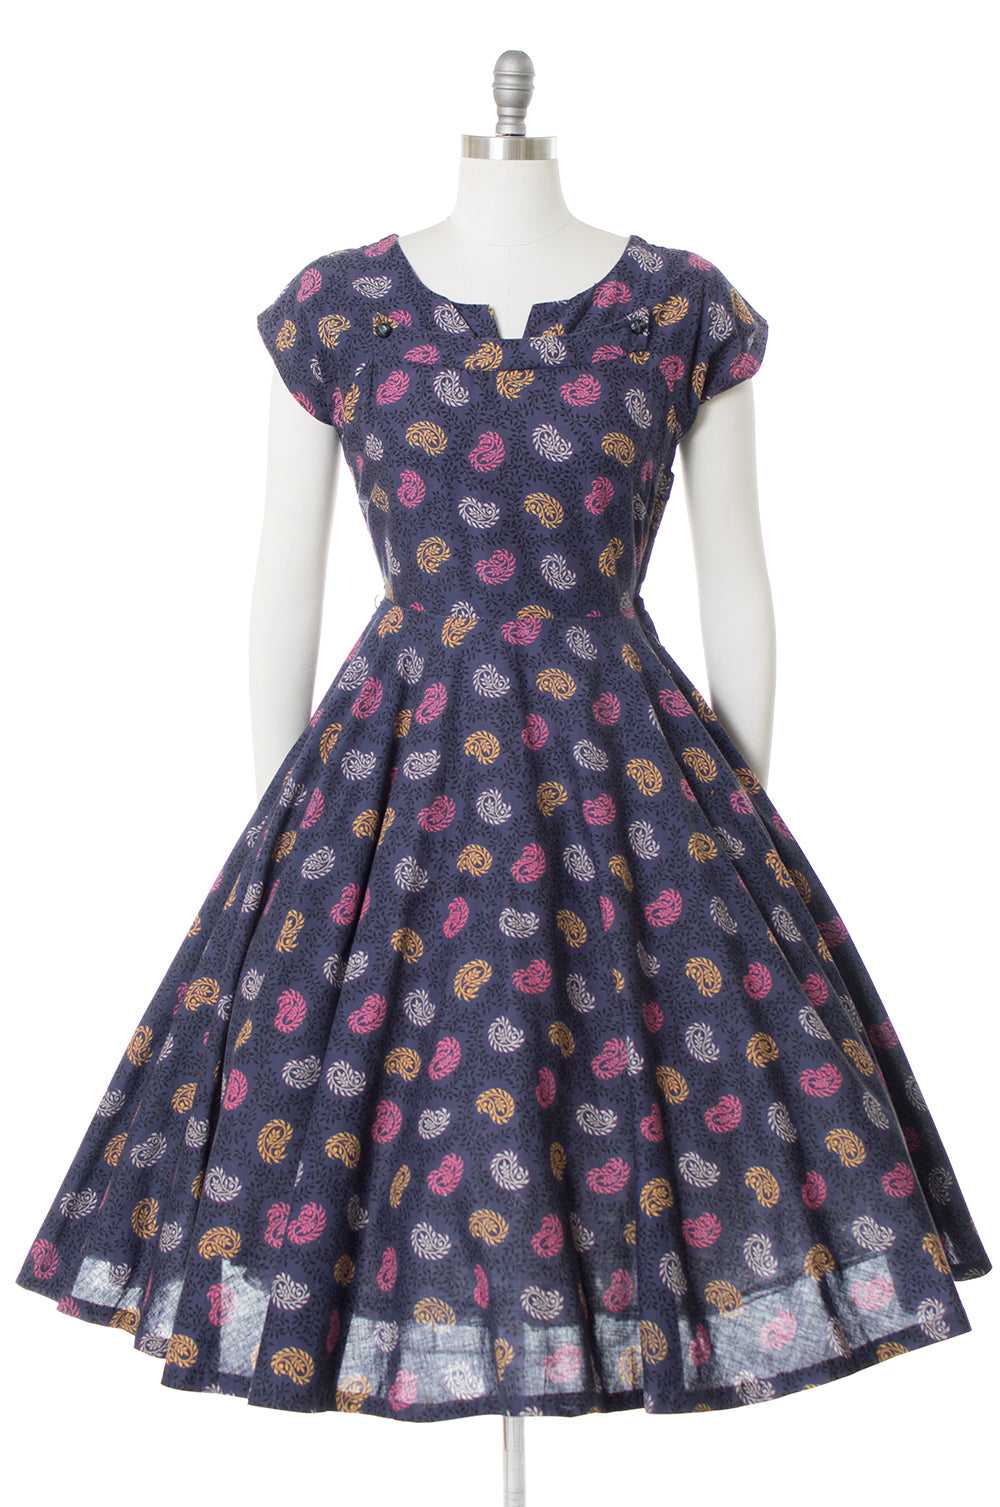 $65 DRESS SALE /// 1950s Paisley Cotton Circle Sk… - image 1